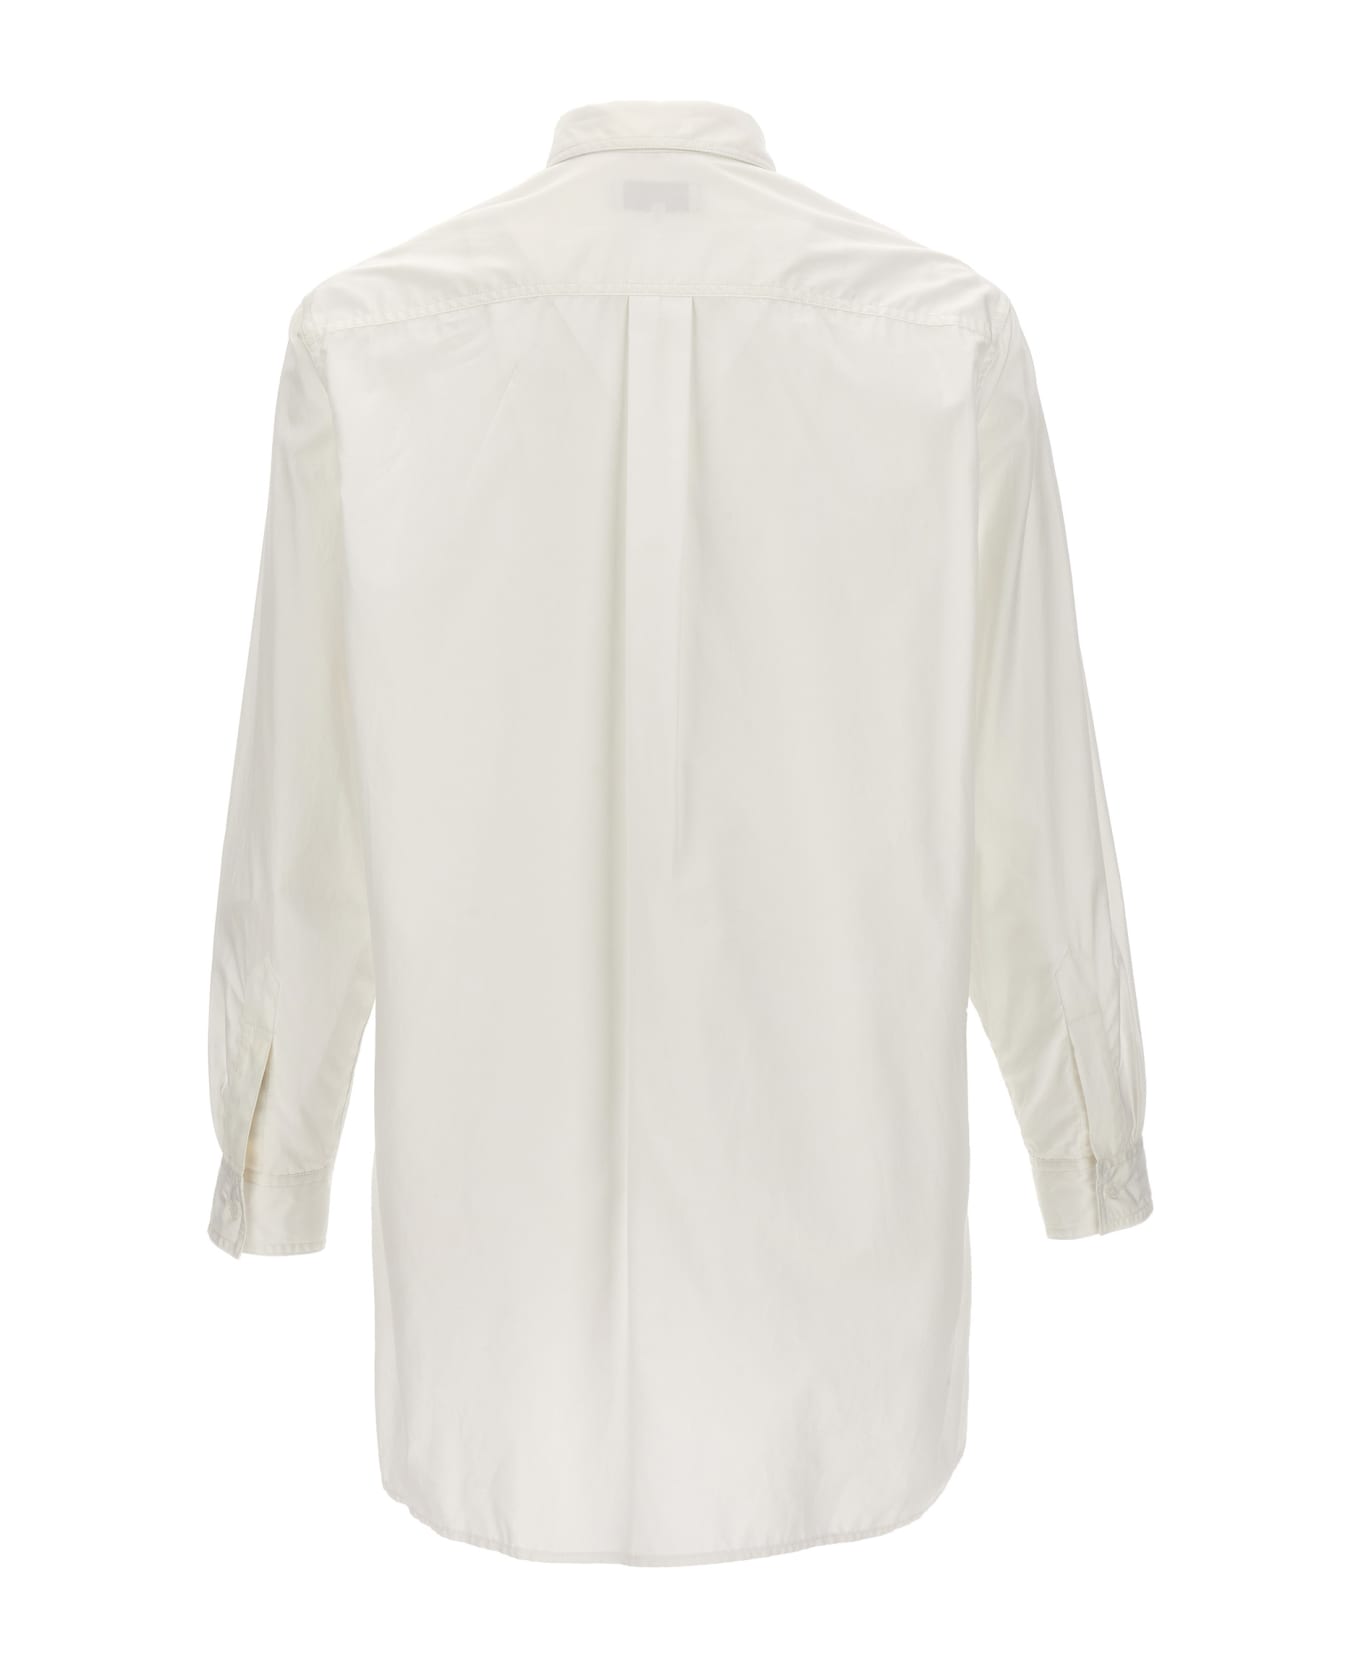 Yohji Yamamoto 'z-standard Big Chain Stitch' Shirt - White シャツ